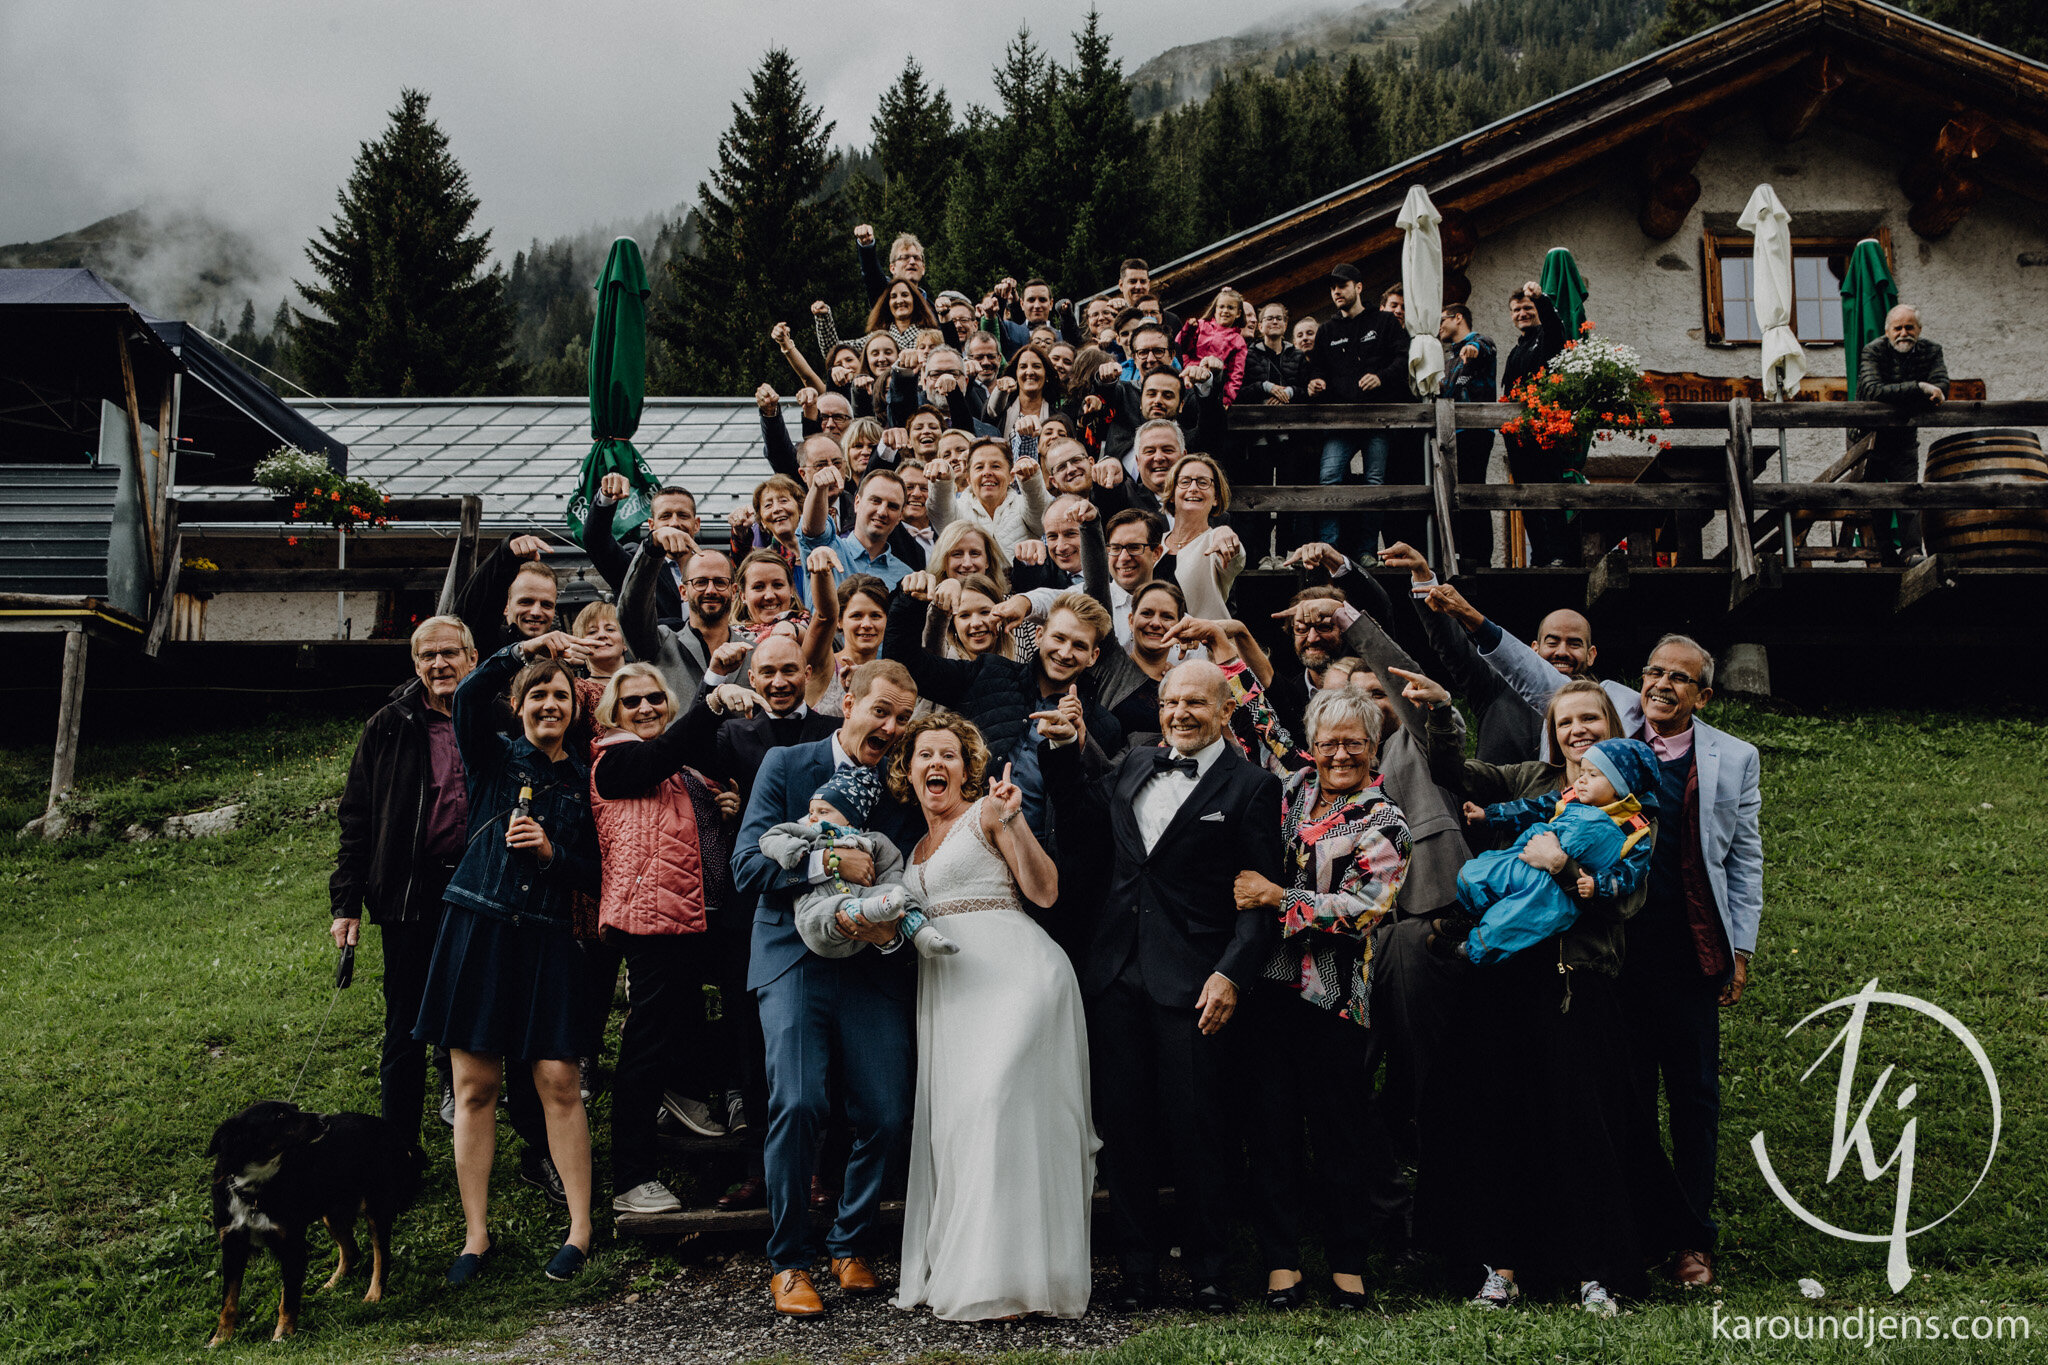 Heiraten-in-den-Bergen-Hochzeit-in-den-Bergen-hochzeitsfotograf-schweiz-karo-und-jens-jens-wenzel-karolin-schell_164_JW_31984.jpg